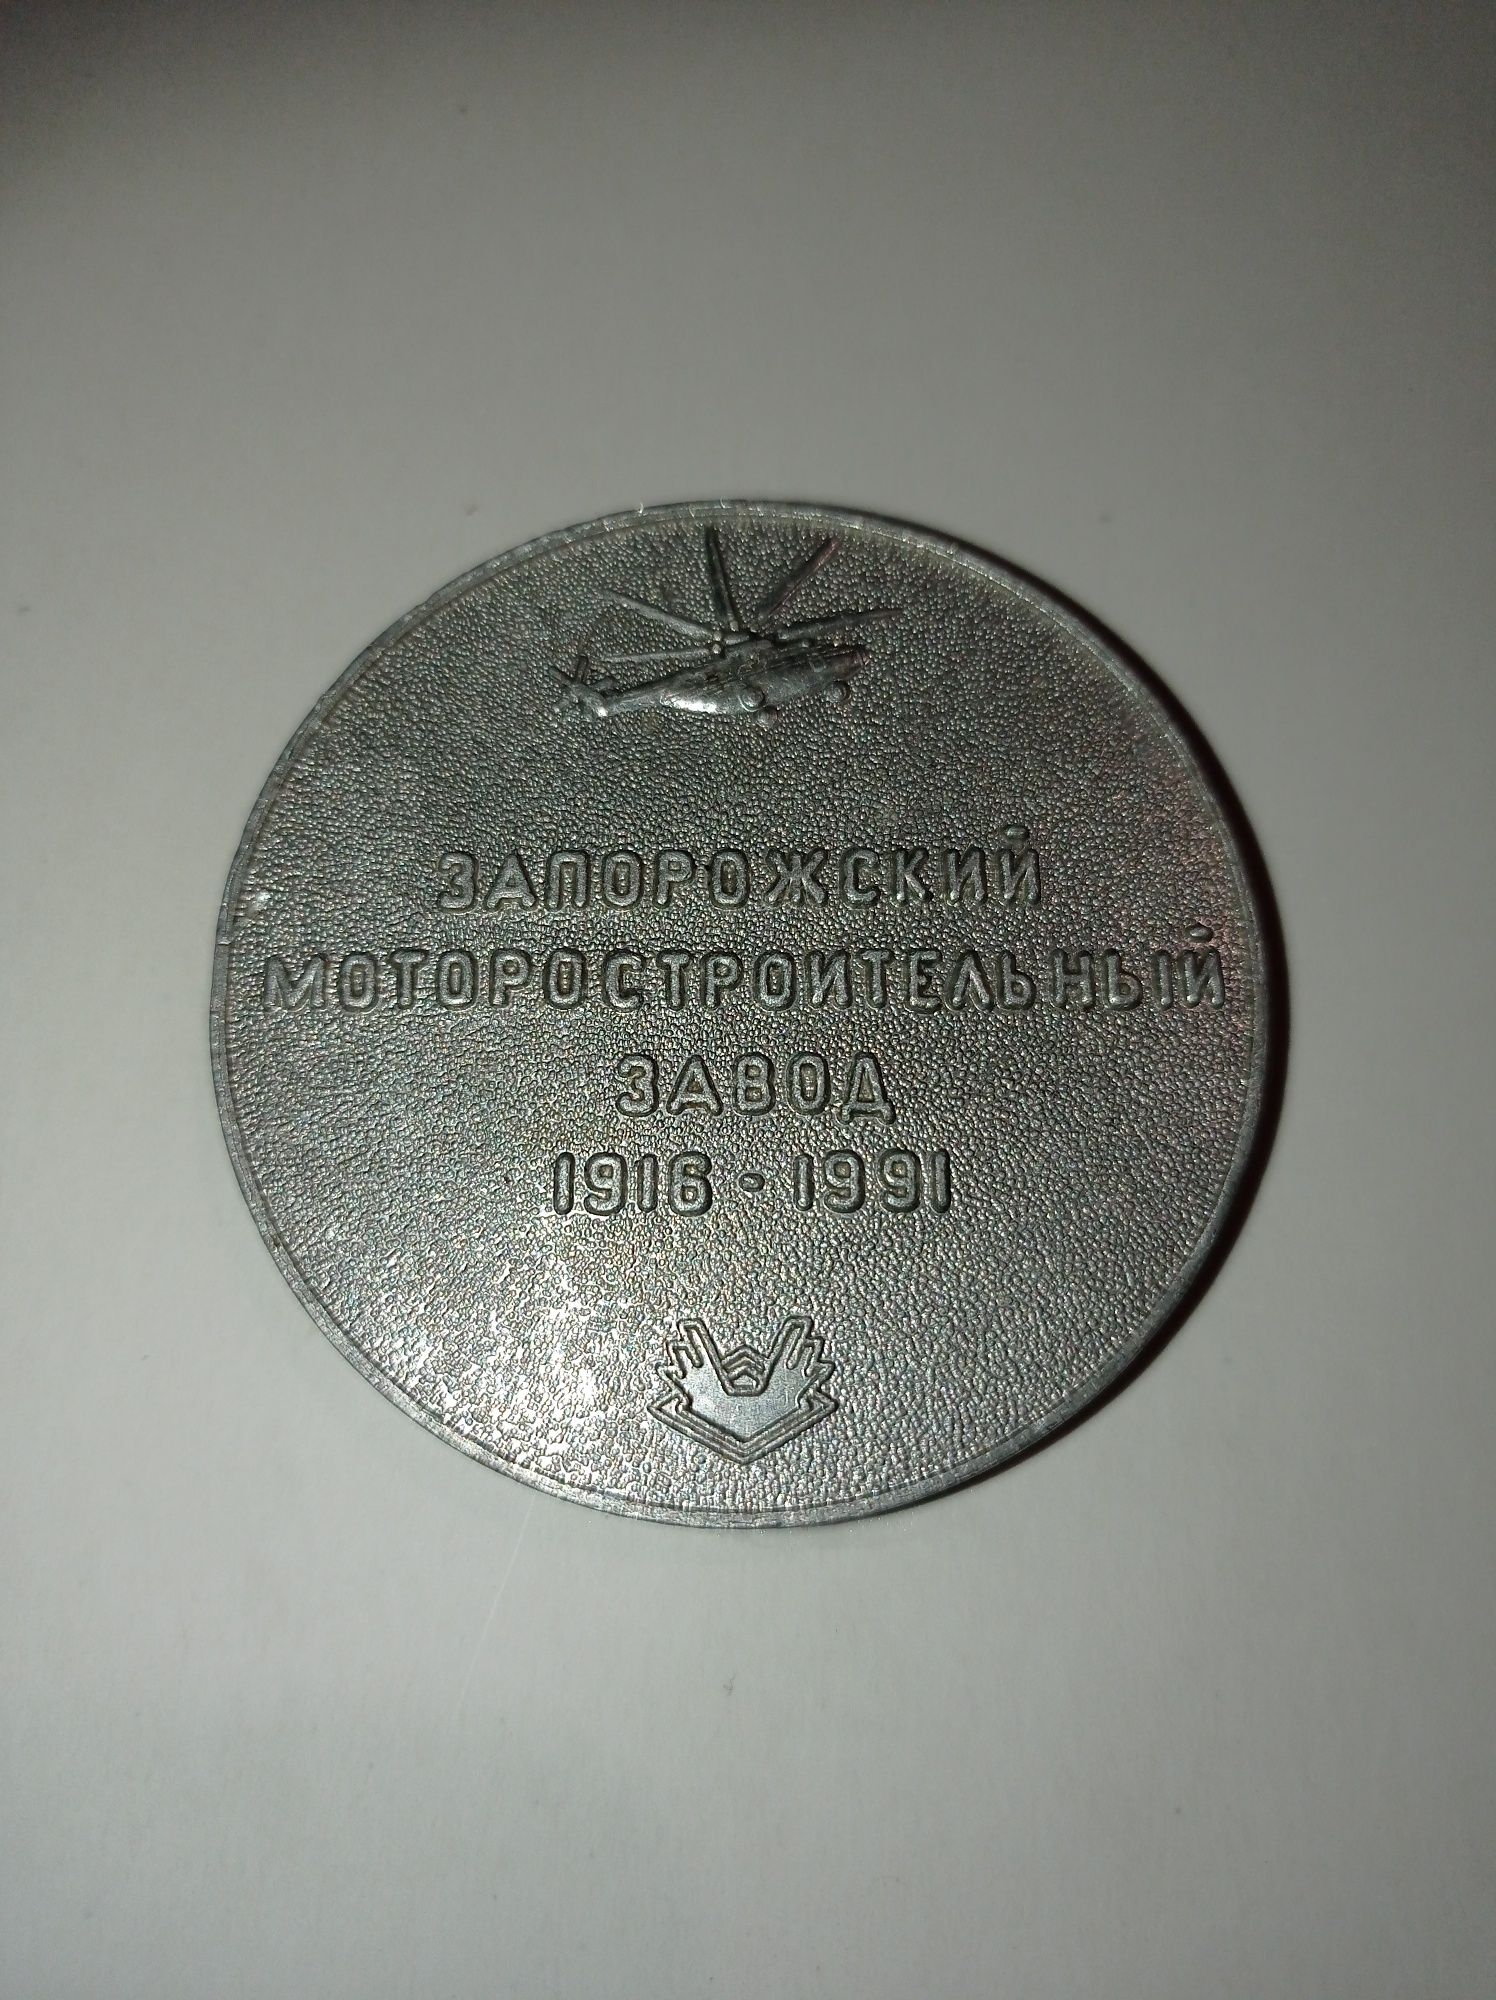 Настольная медаль Запорожский моторстроительный завод 1916 - 1991